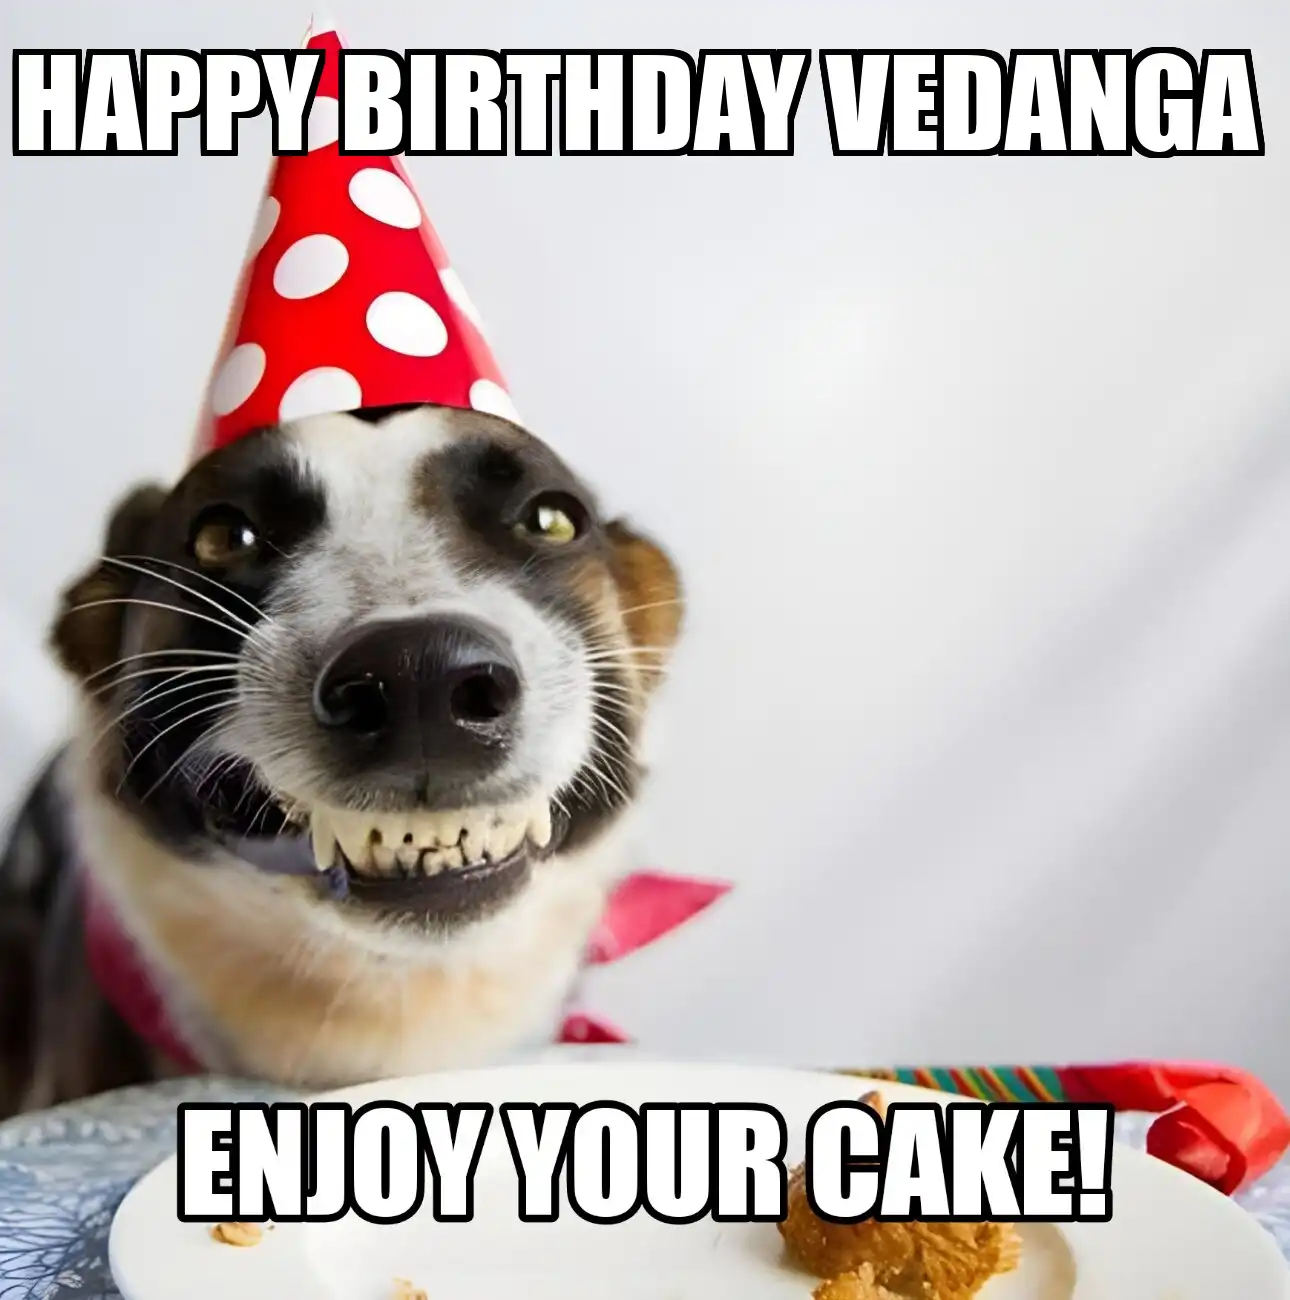 Happy Birthday Vedanga Enjoy Your Cake Dog Meme